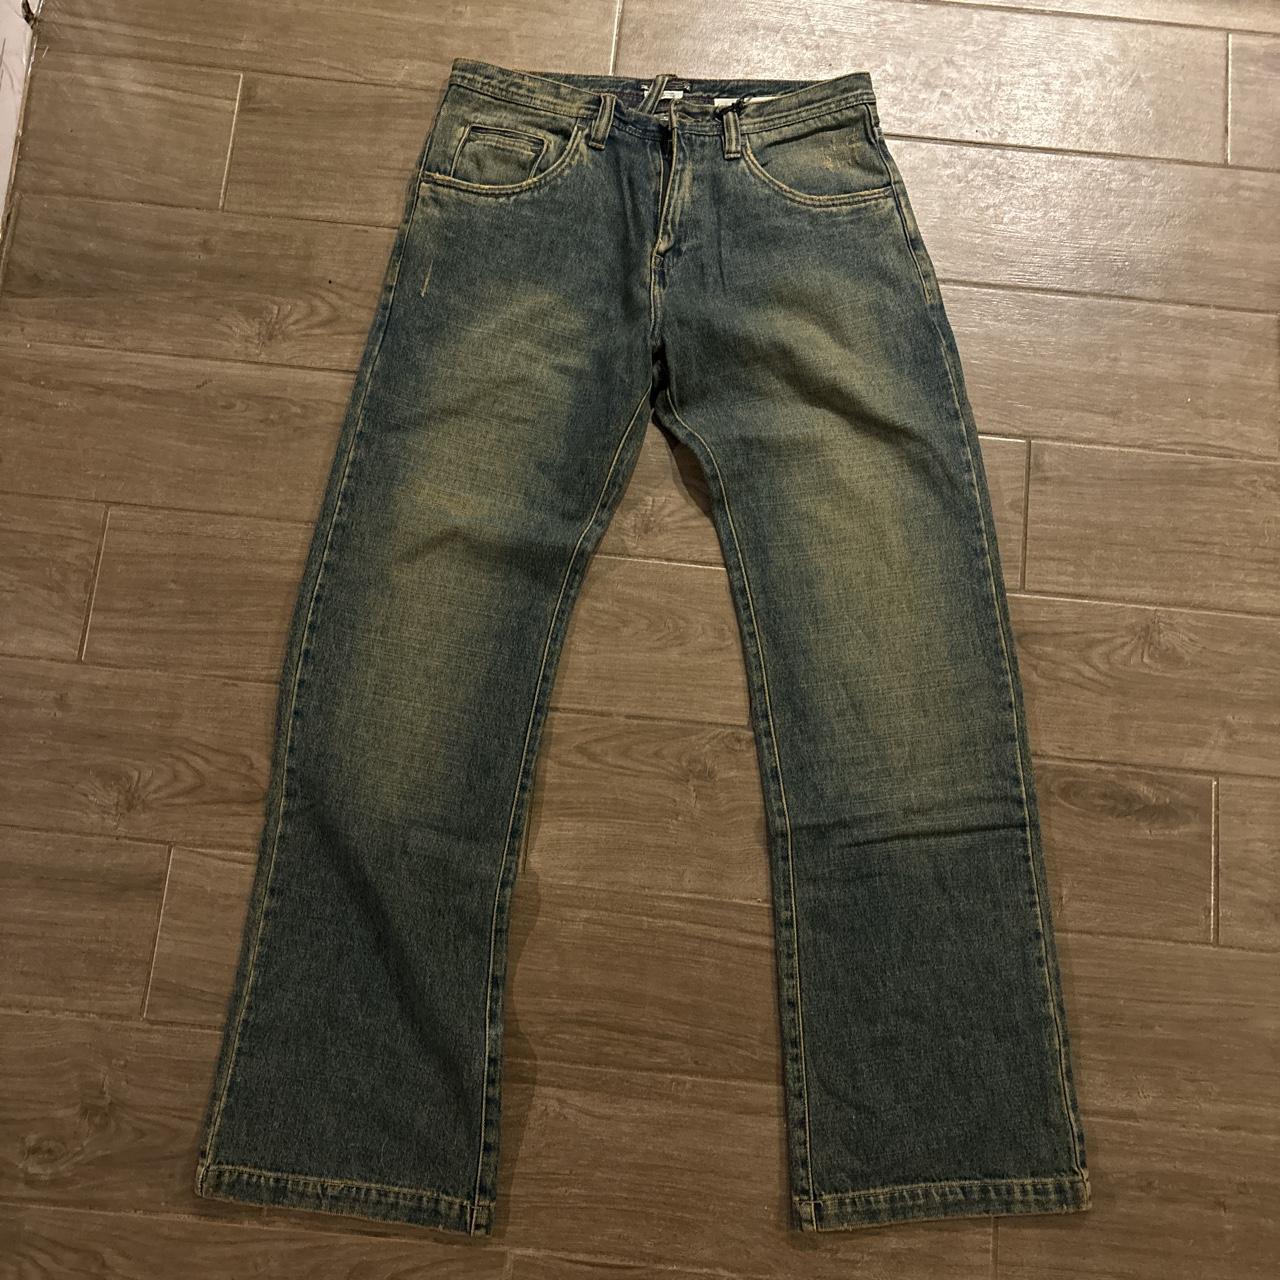 Crazy deadstock rusty y2k bootcut jeans size... - Depop